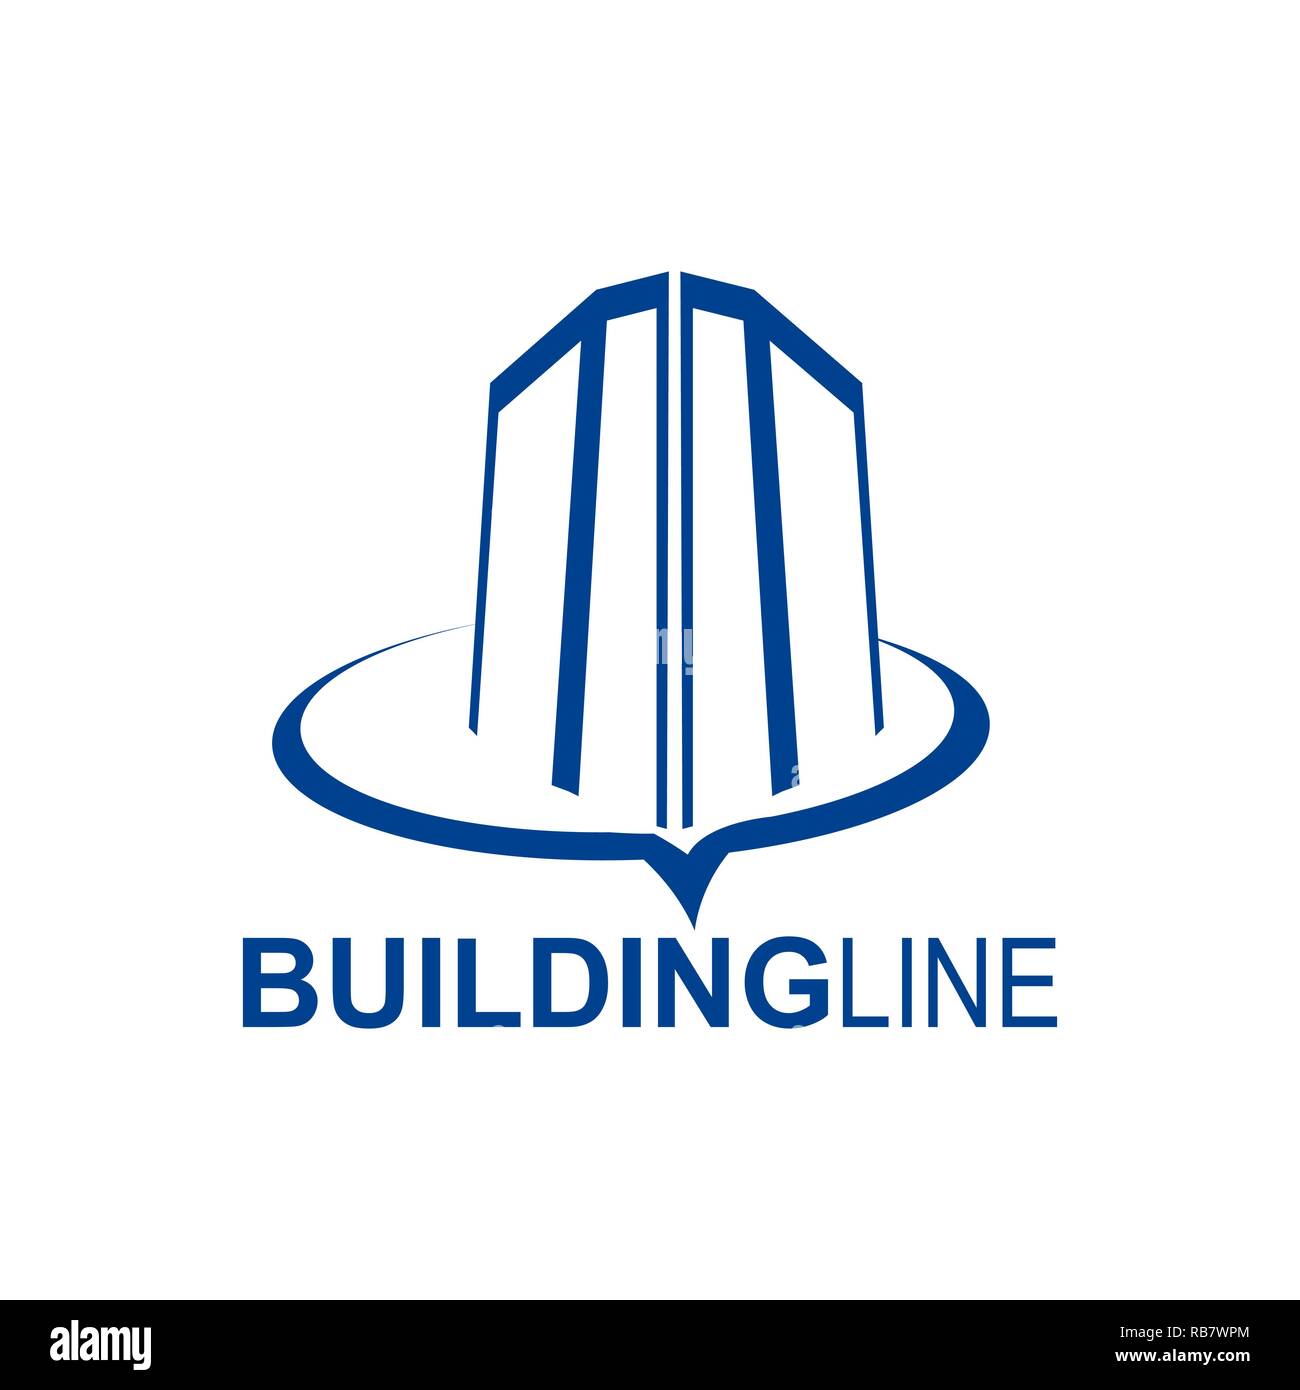 Gebäude line logo Konzept Design vorlage Idee für Immobilien bussines Stock Vektor